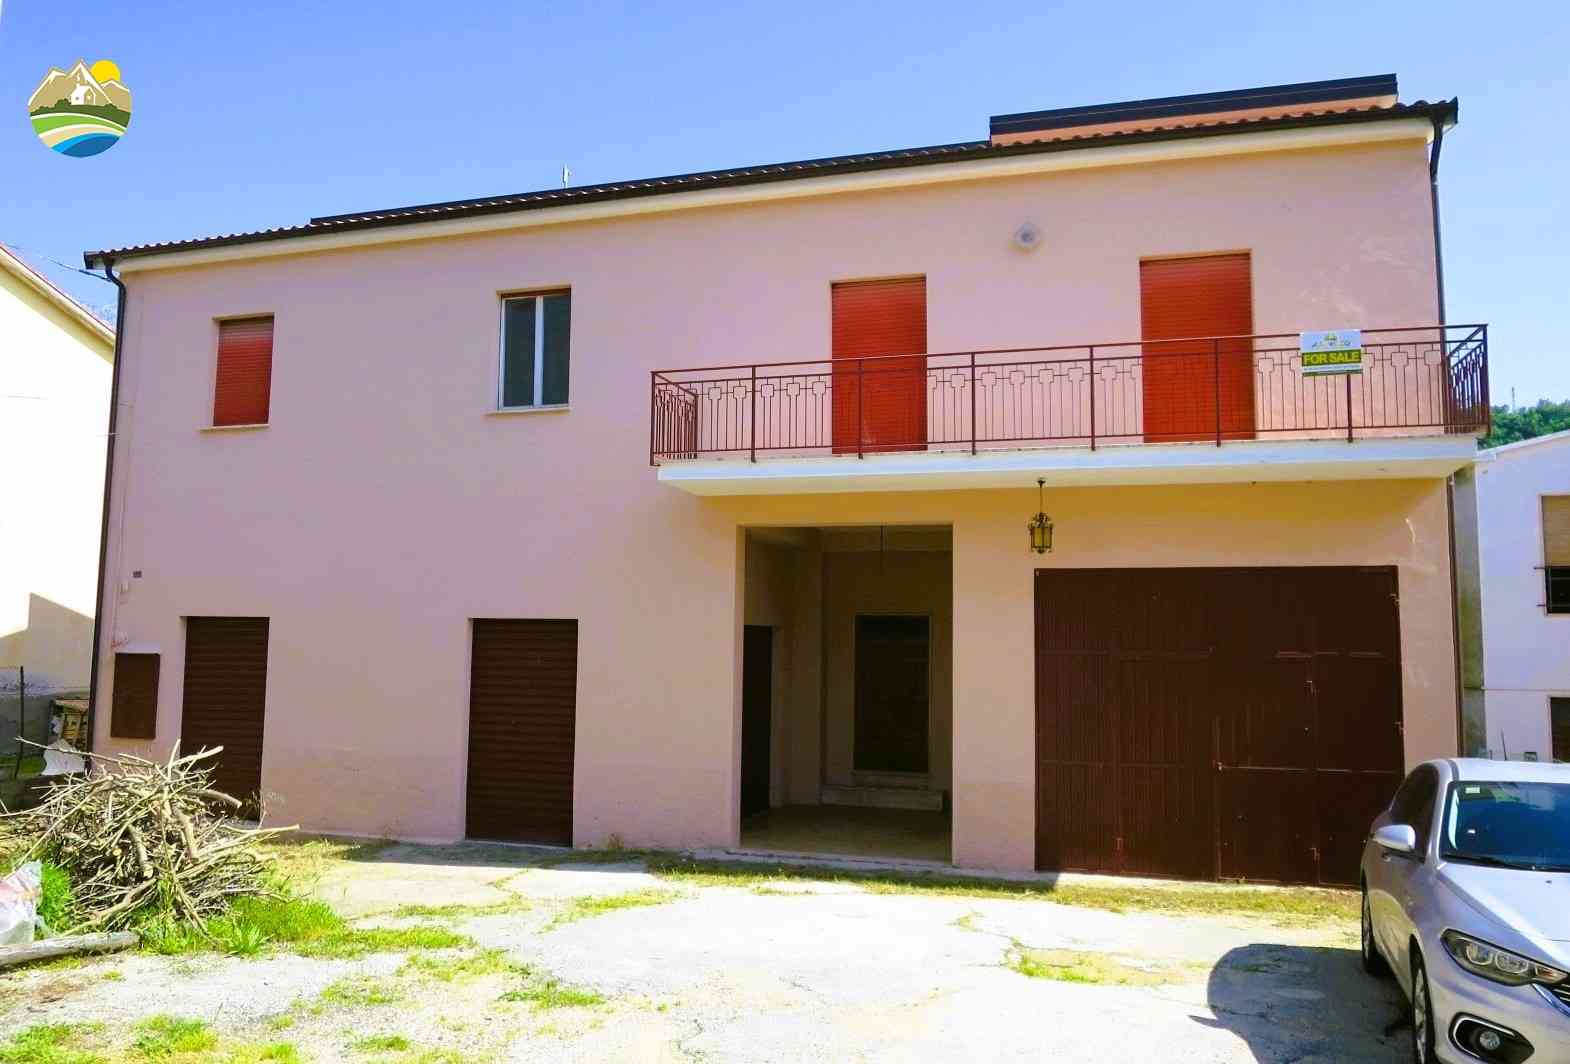 Townhouse Casa del Tiglio - Bisenti - EUR 116.451